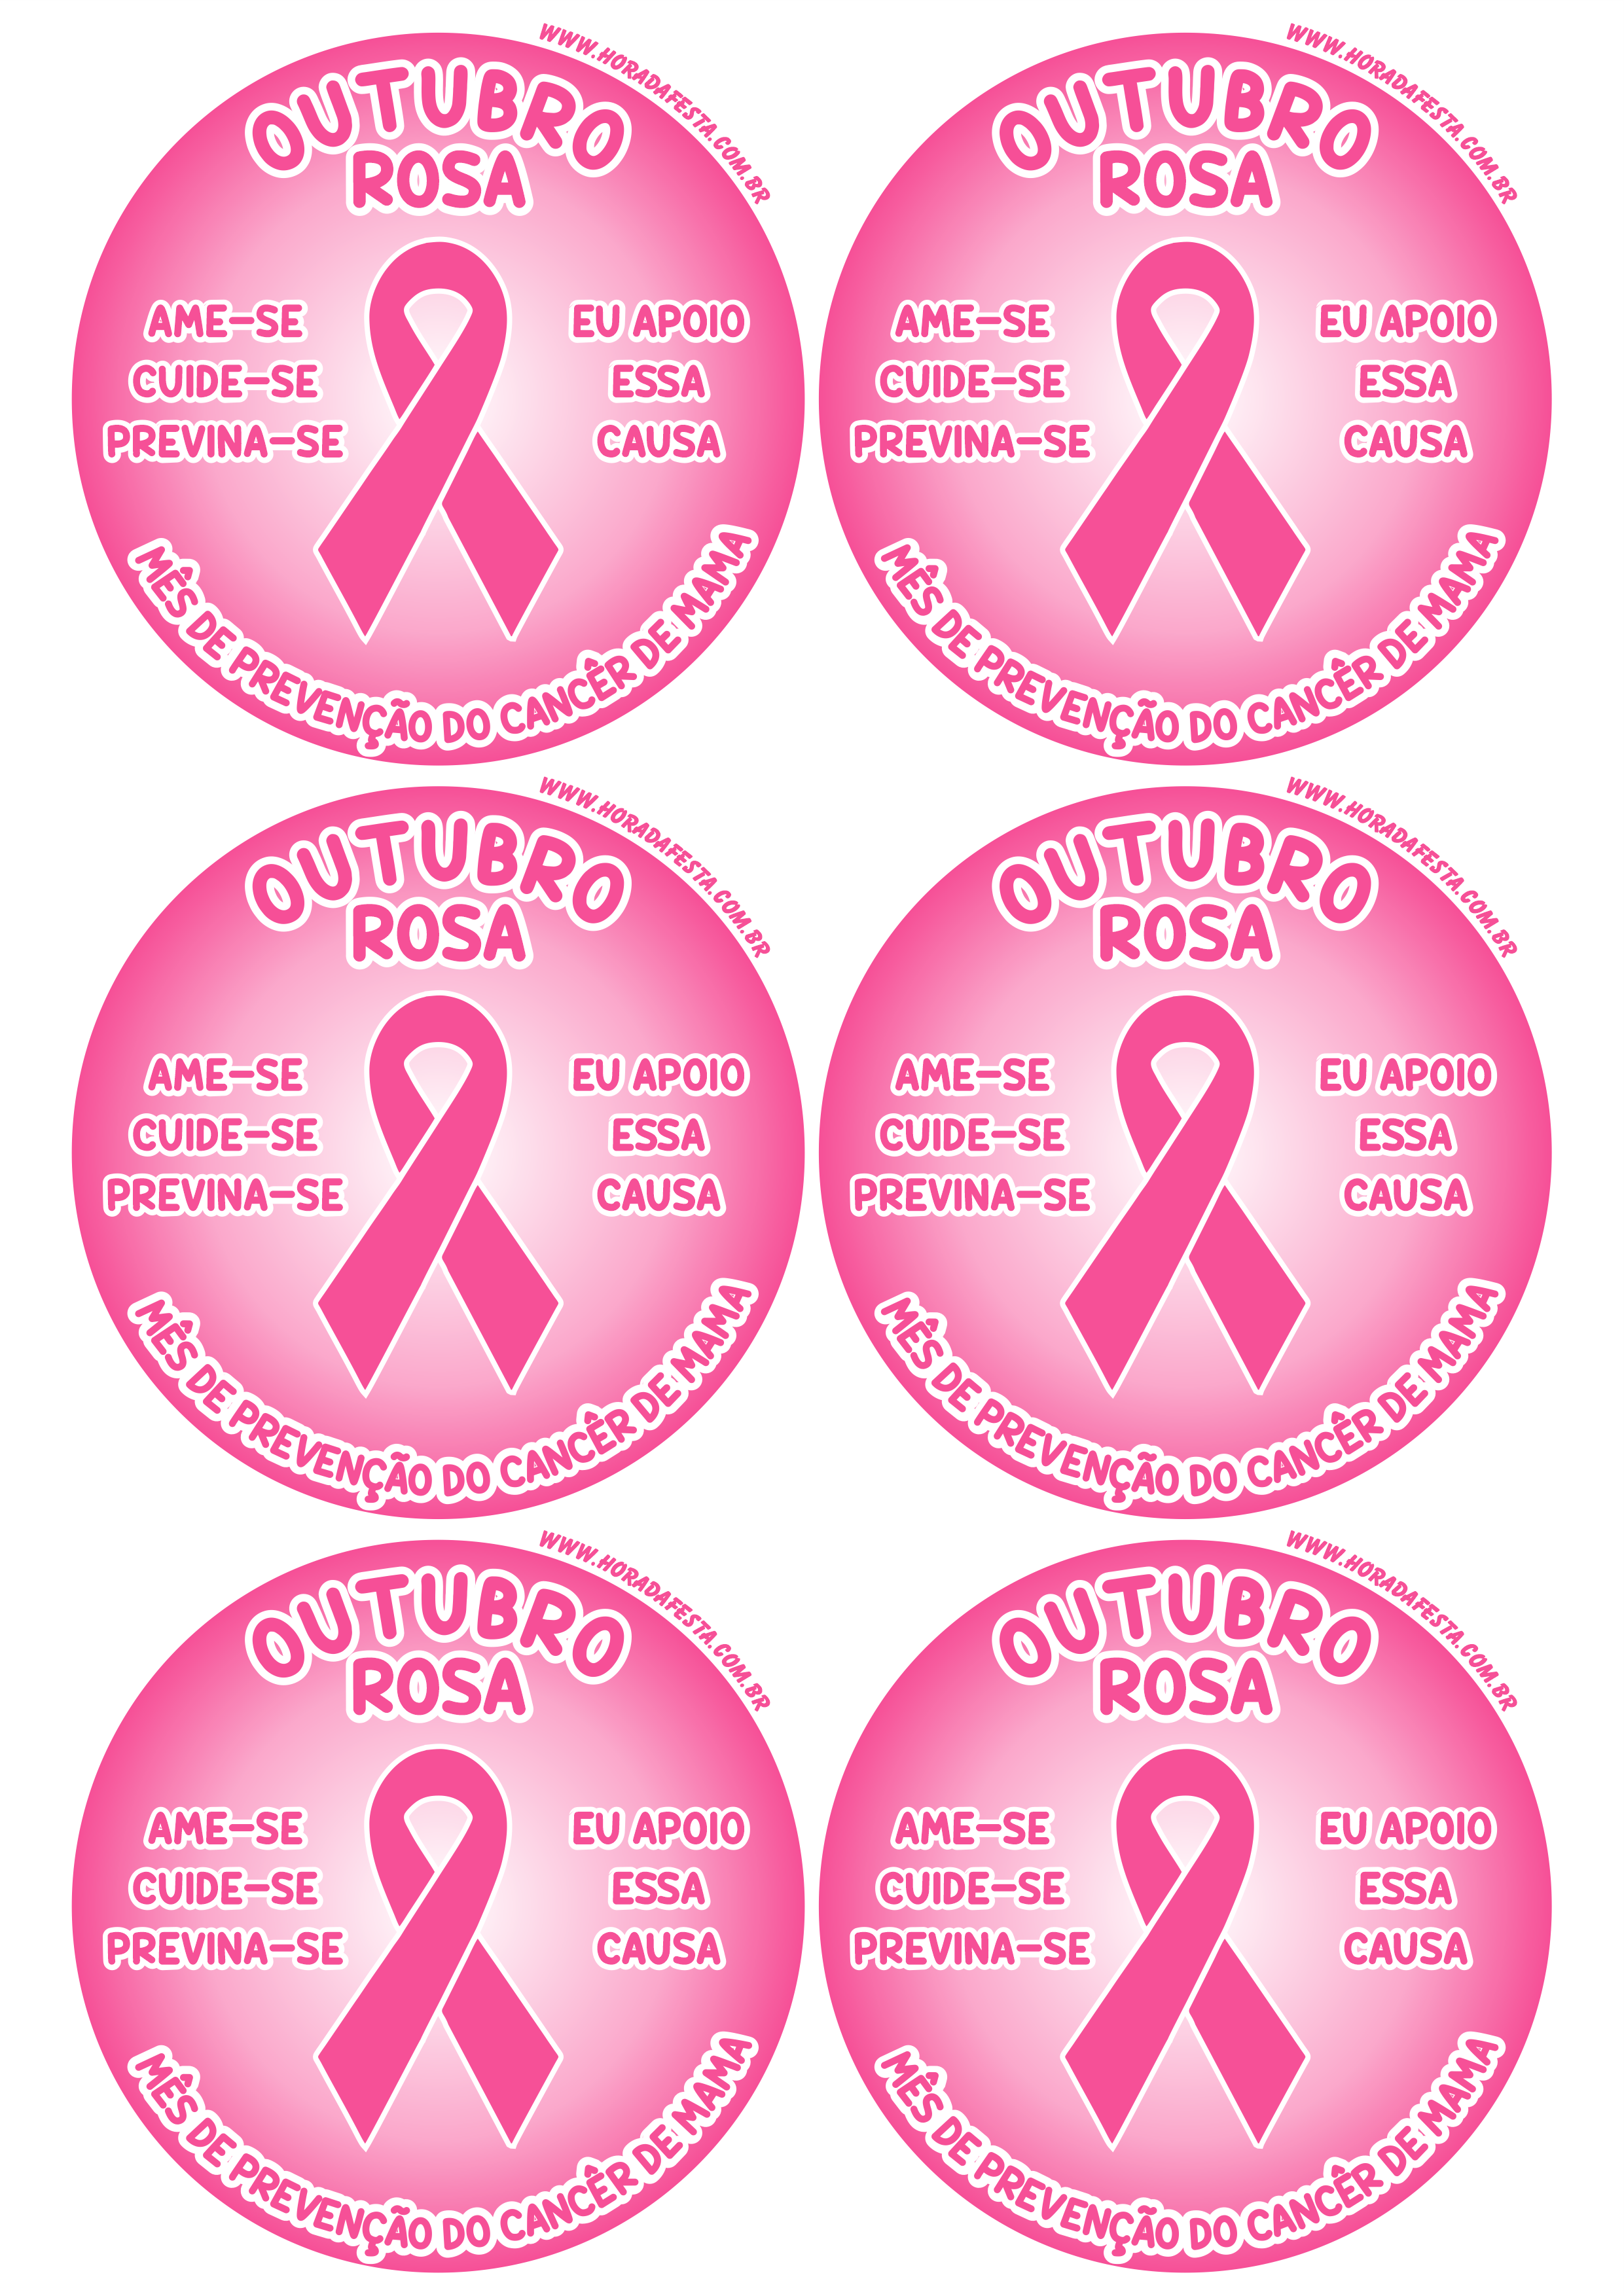 Outubro rosa mês de prevenção do câncer de mama ame-se cuide-se previna-se eu apoio essa causa adesivo redondo tag sticker 6 imagens png